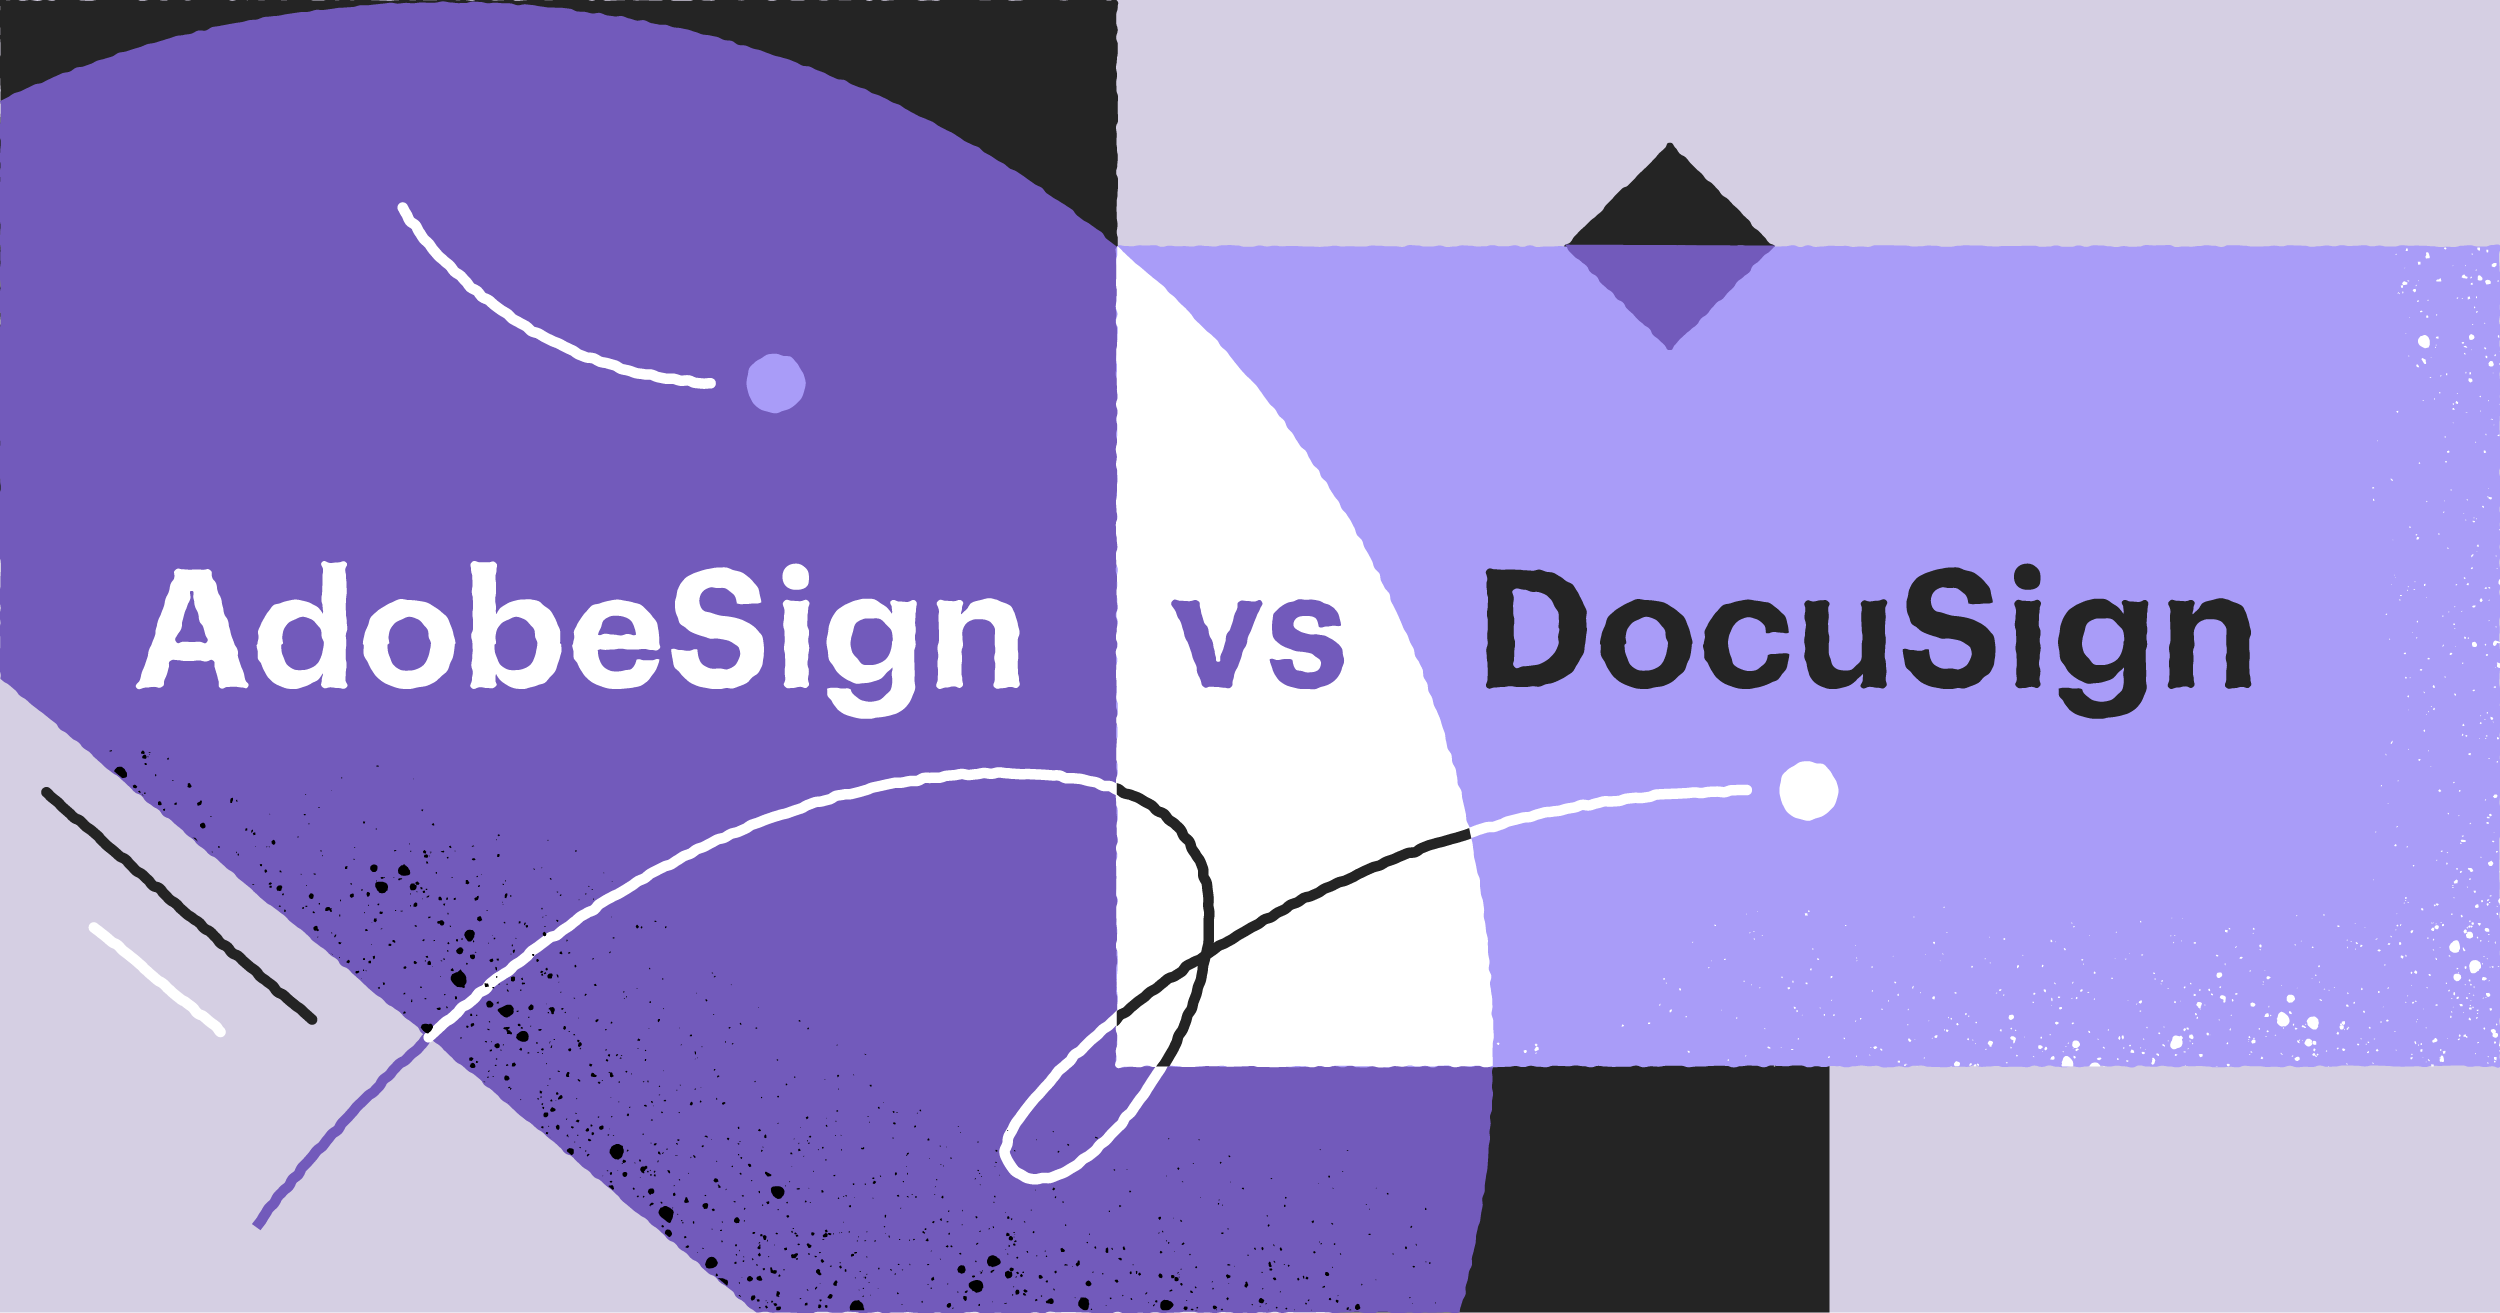 Adobe Sign vs DocuSign: 2022 comparison